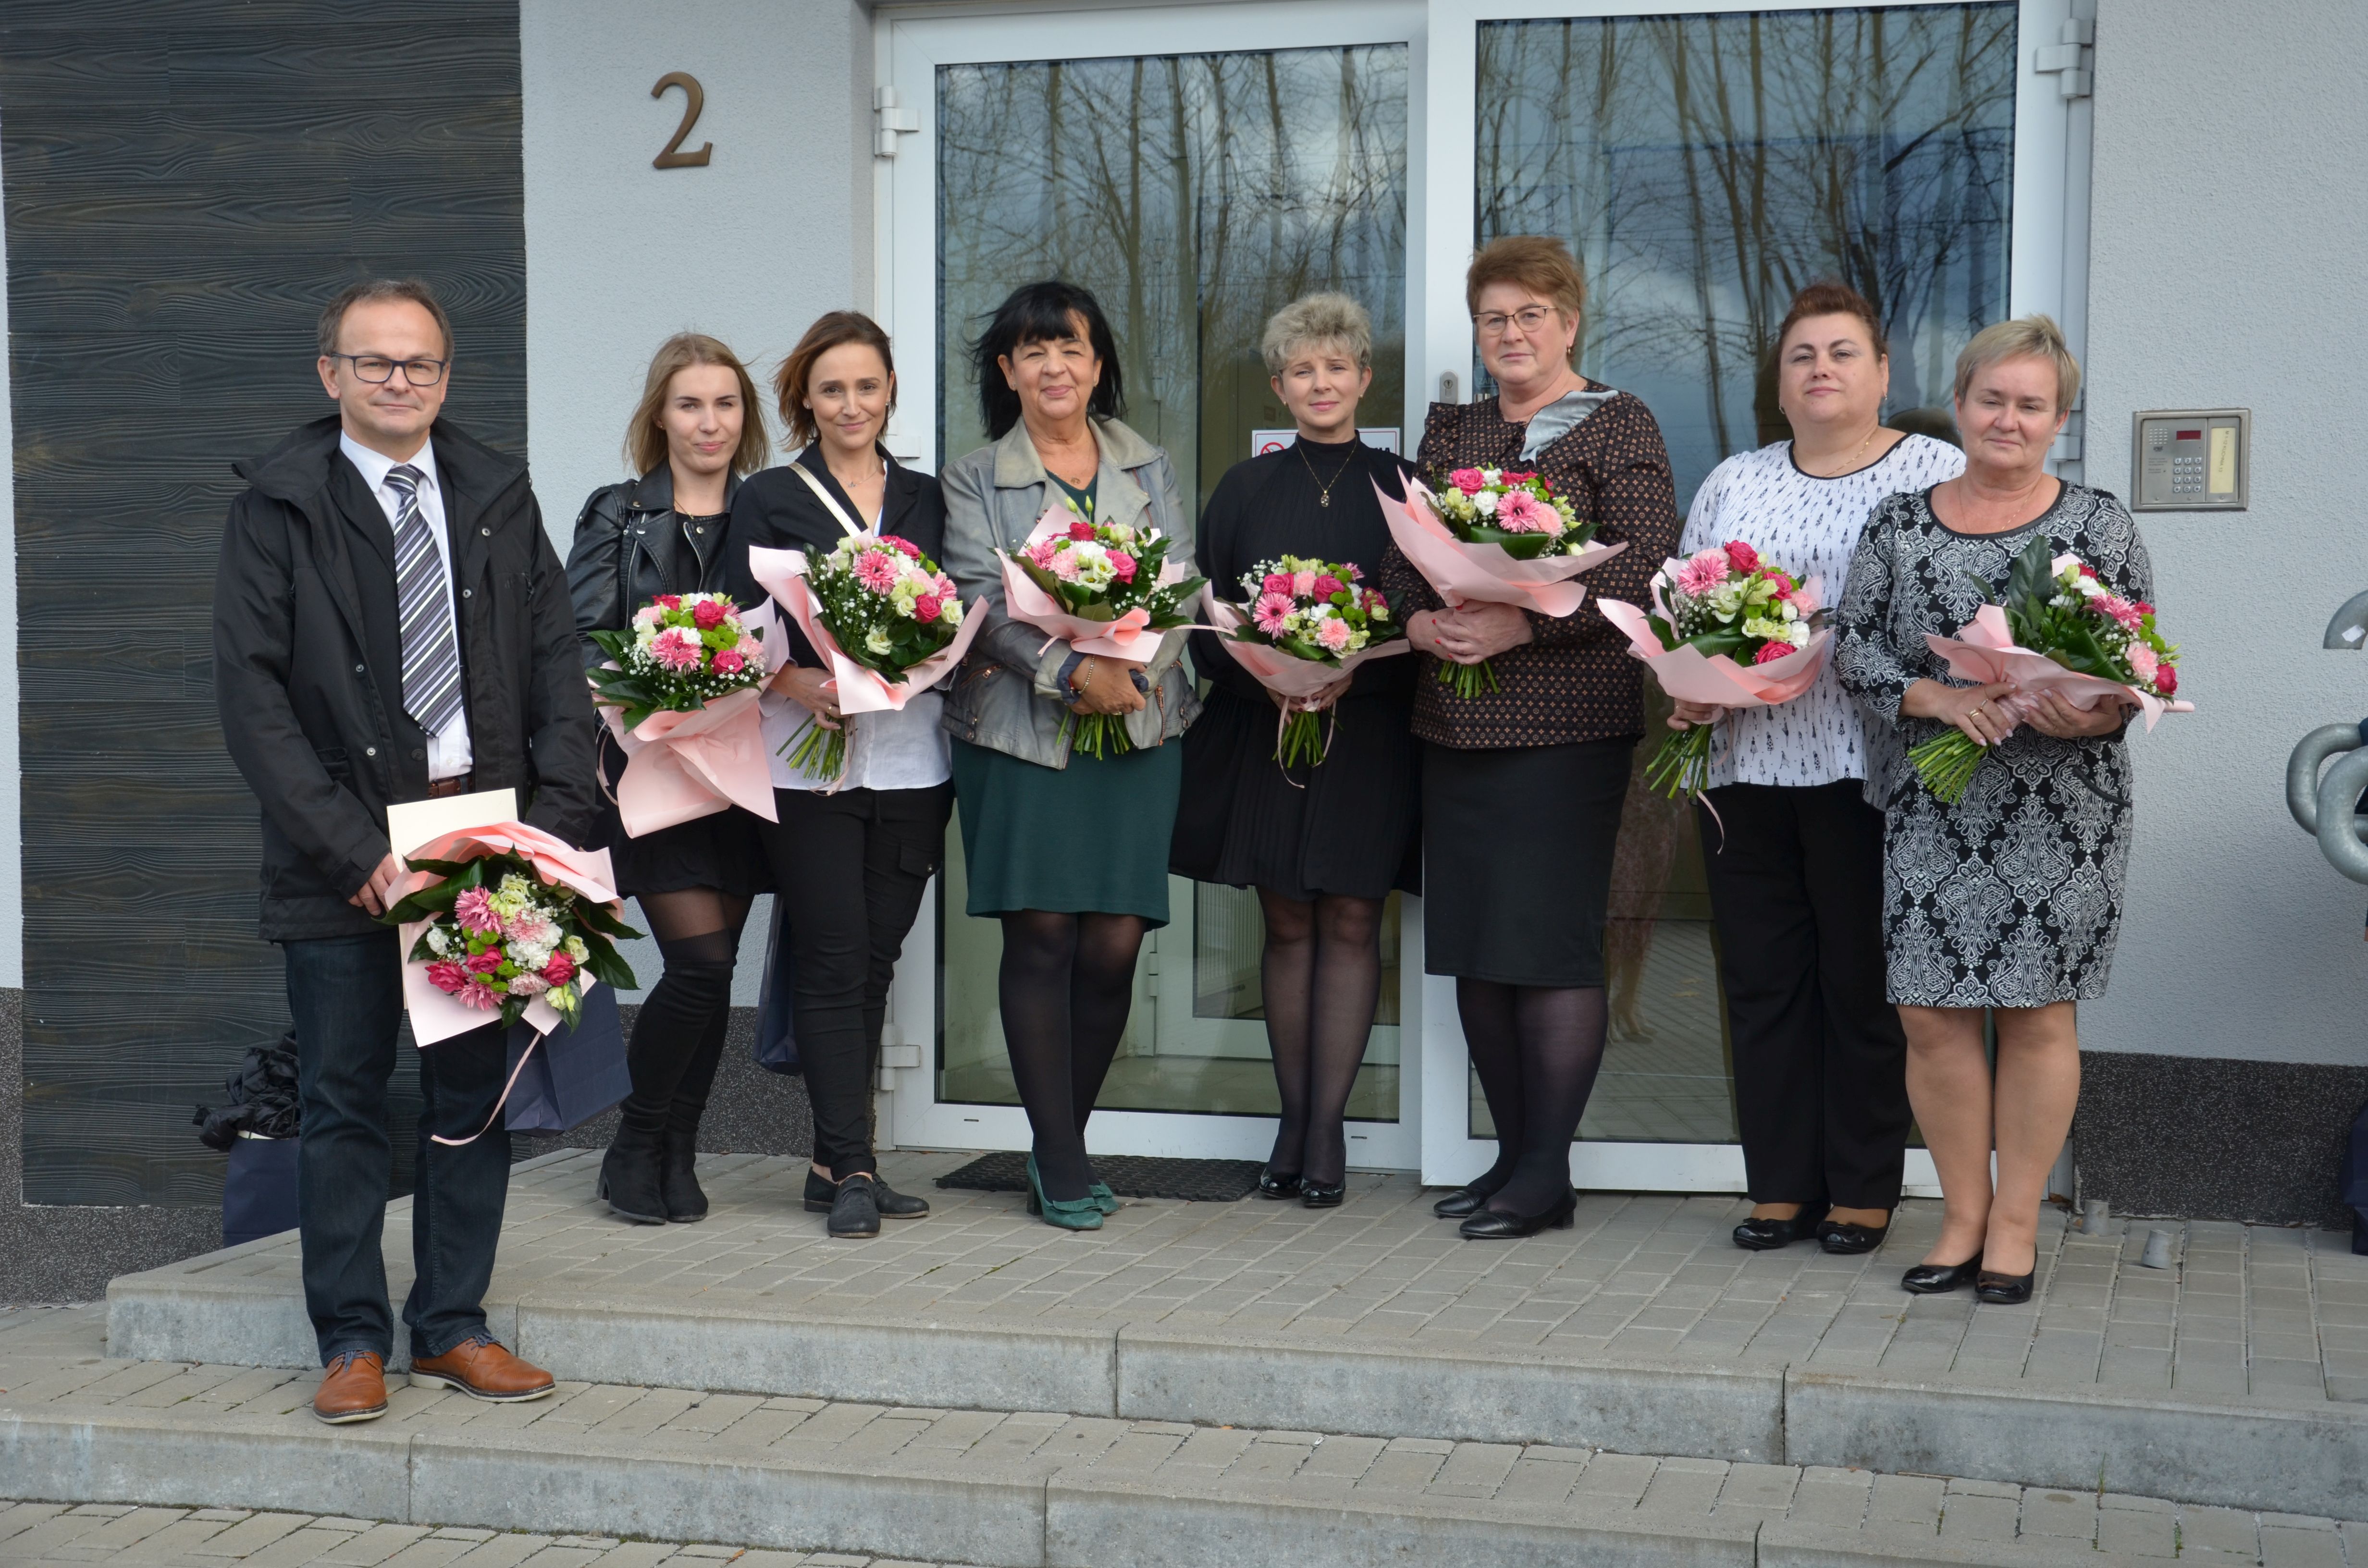 Grupa 8 osób (mężczyzna i kobiety) stojąca przed wejściem do budynku. W ręce trzymają kwiaty.